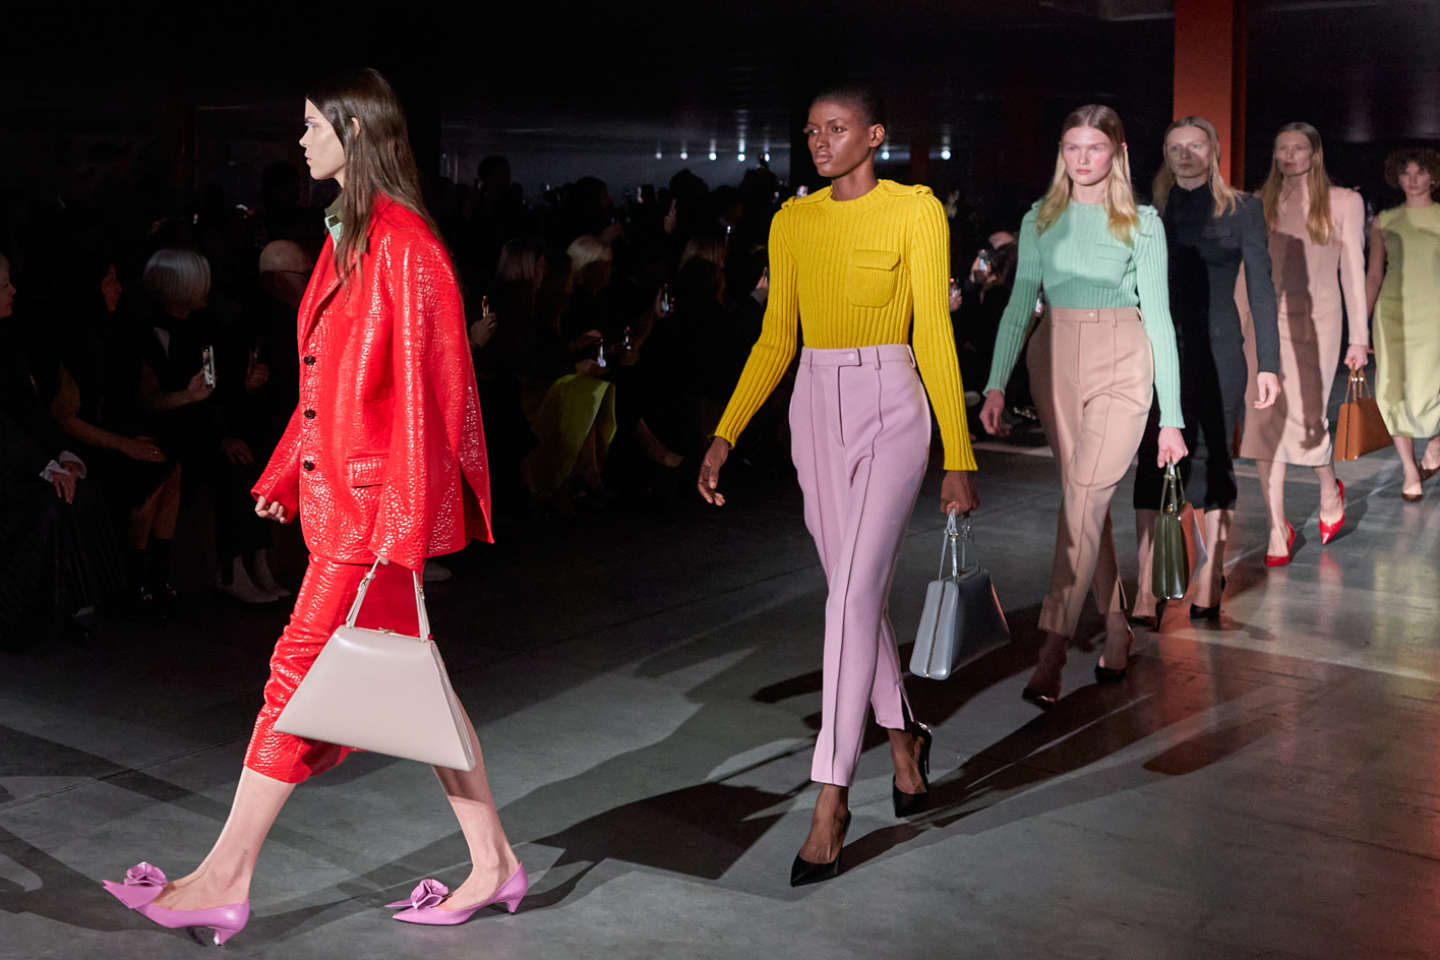 At Milan fashion week, elegance is serious business